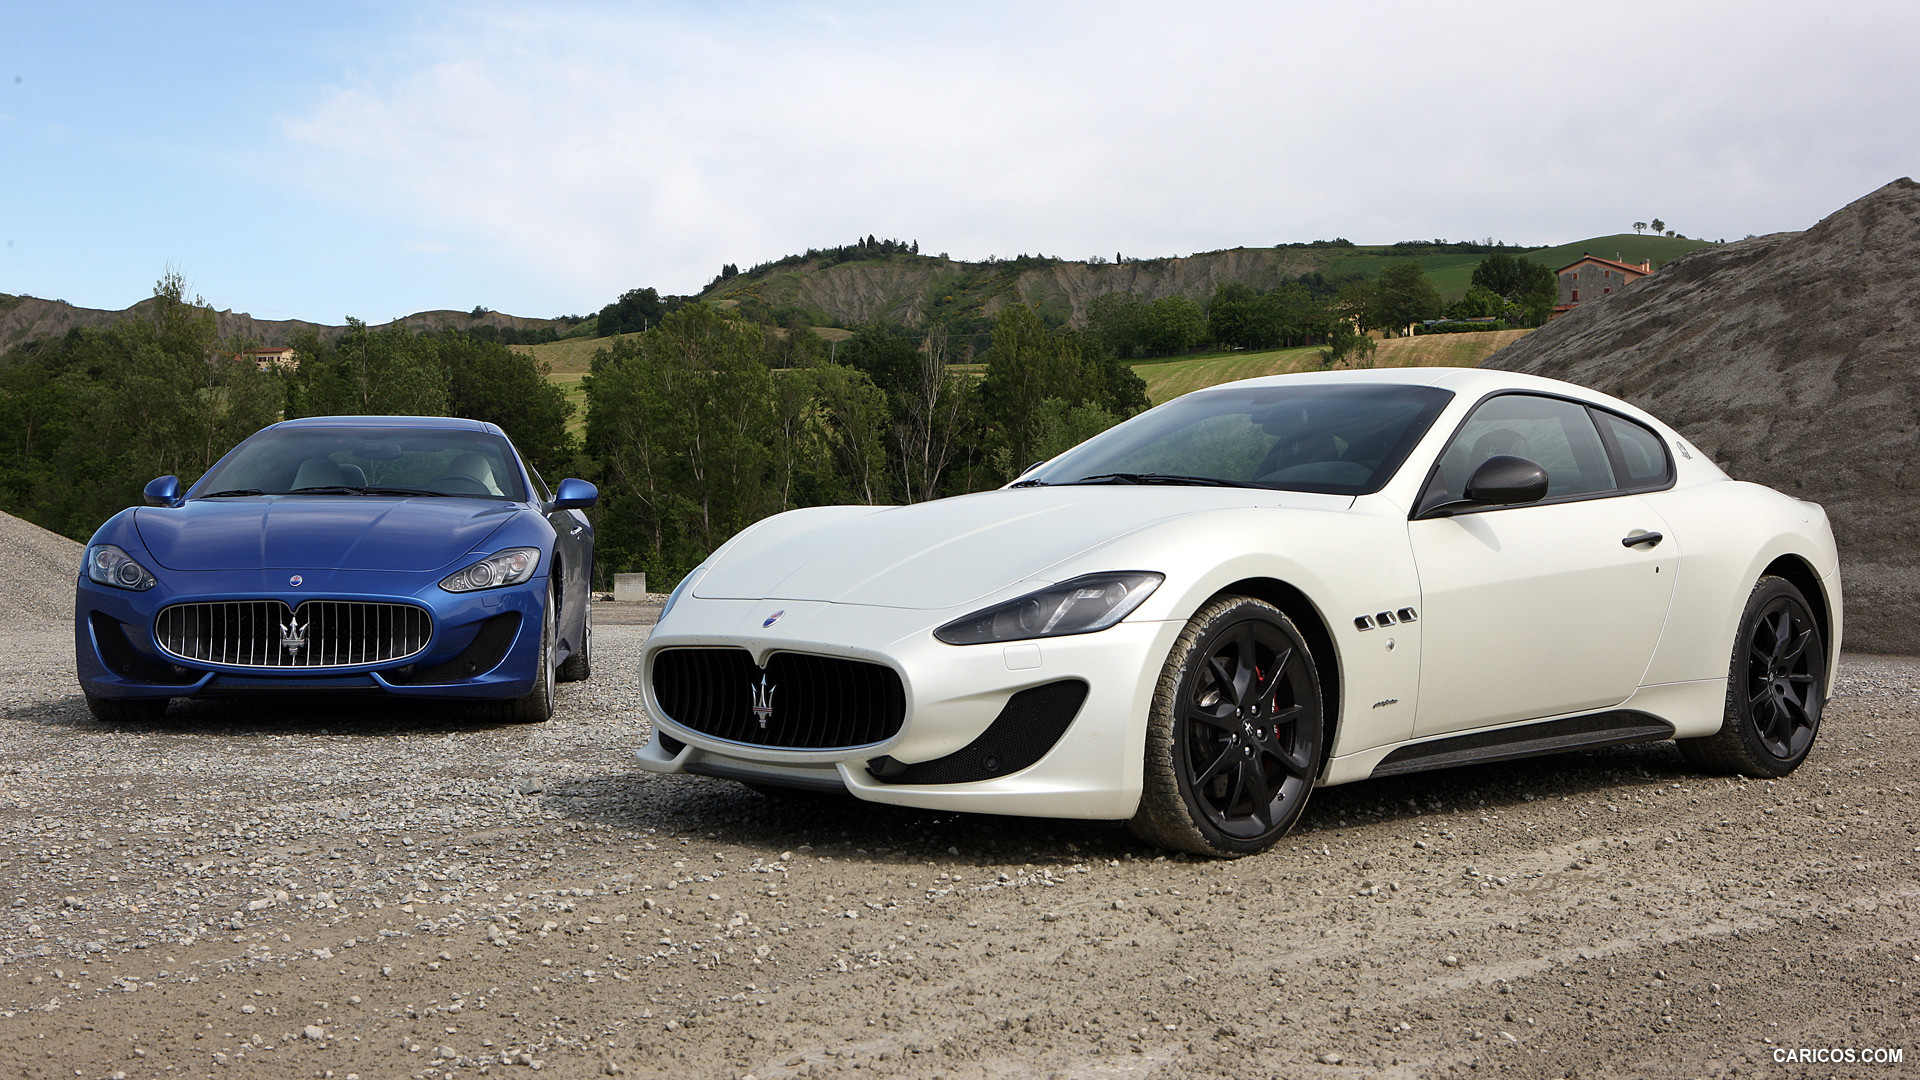 2013 Maserati GranTurismo Sport Duo - Front, #20 of 63